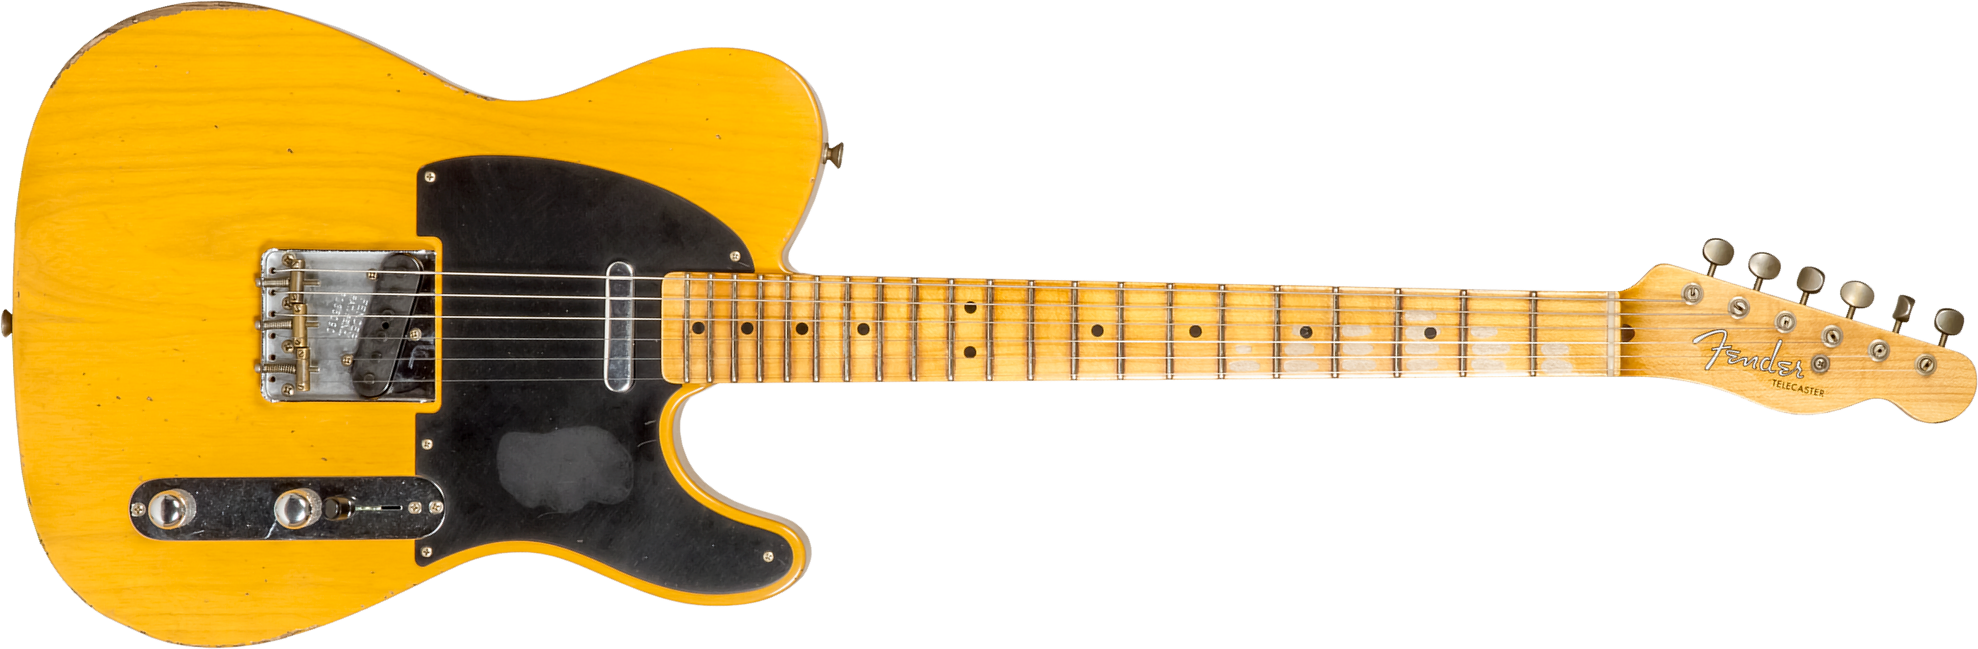 Fender Custom Shop Tele 1952 2s Ht Mn #r135090 - Relic Aged Butterscotch Blonde - Guitare Électrique Forme Tel - Main picture